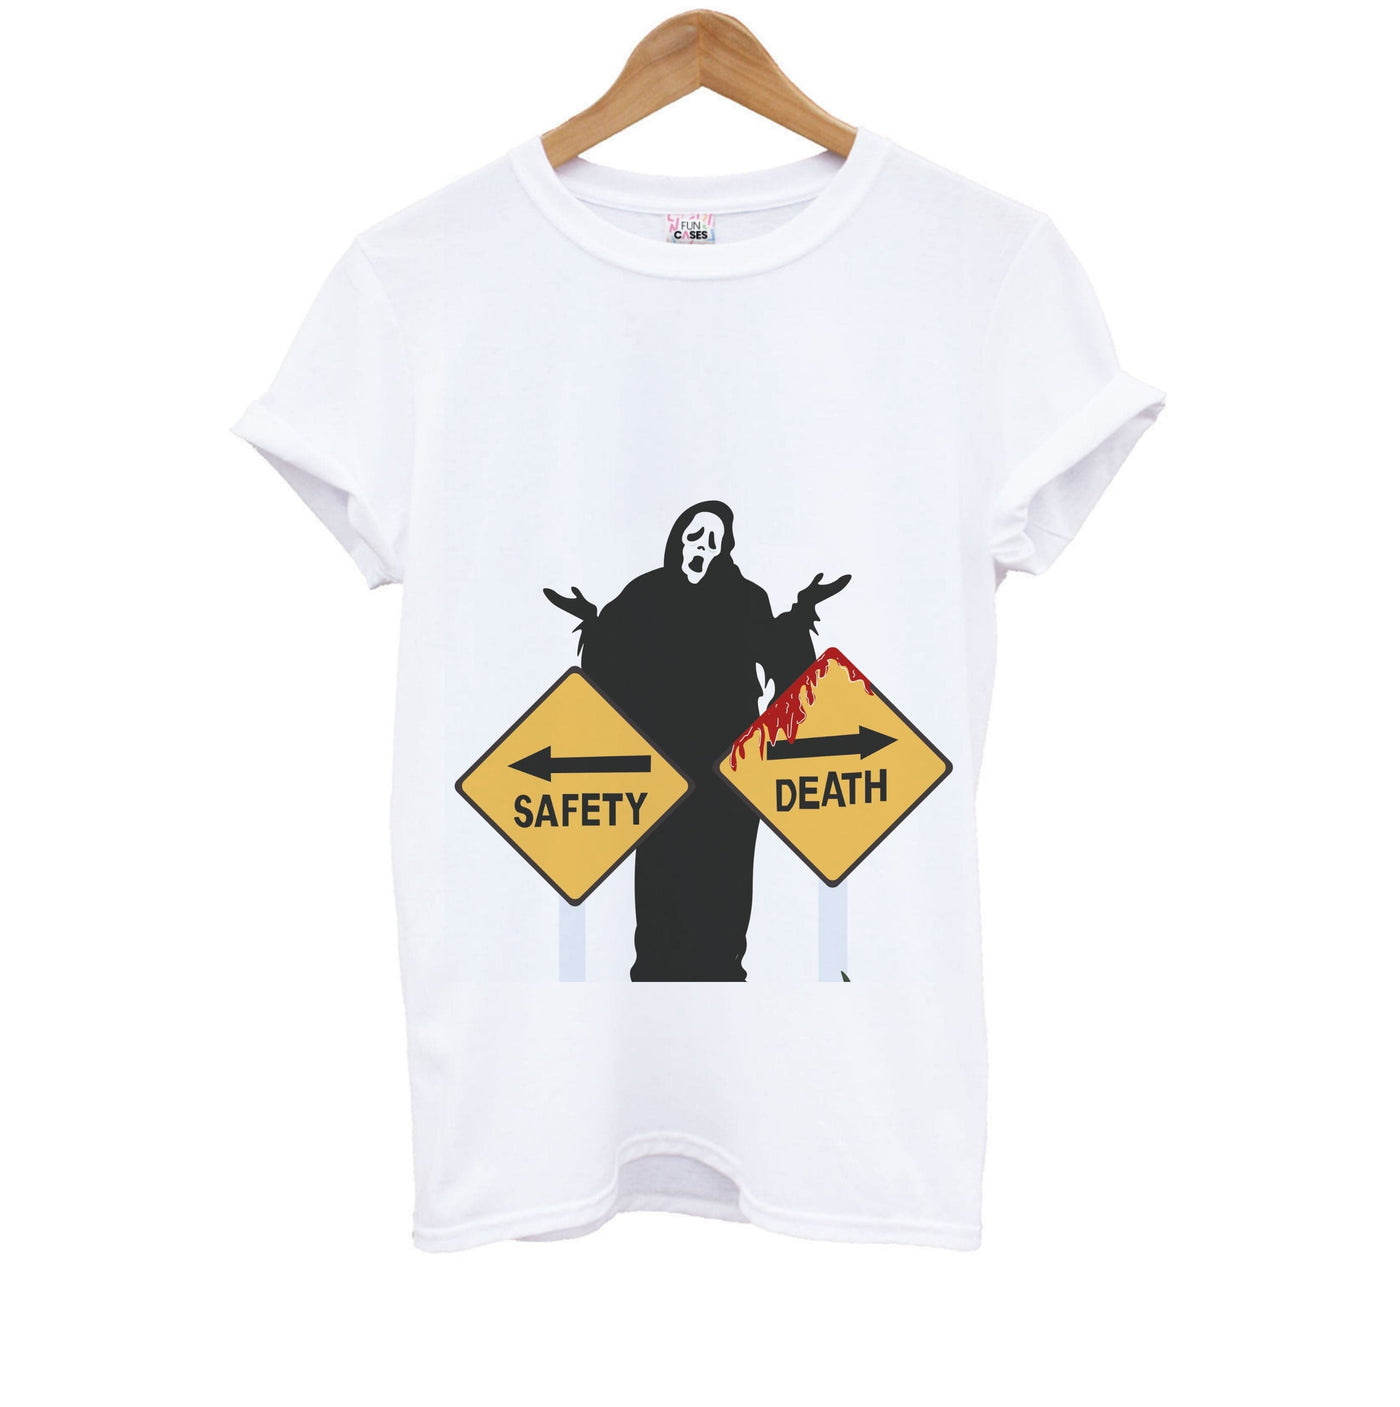 Safety Or Death - Scream Kids T-Shirt